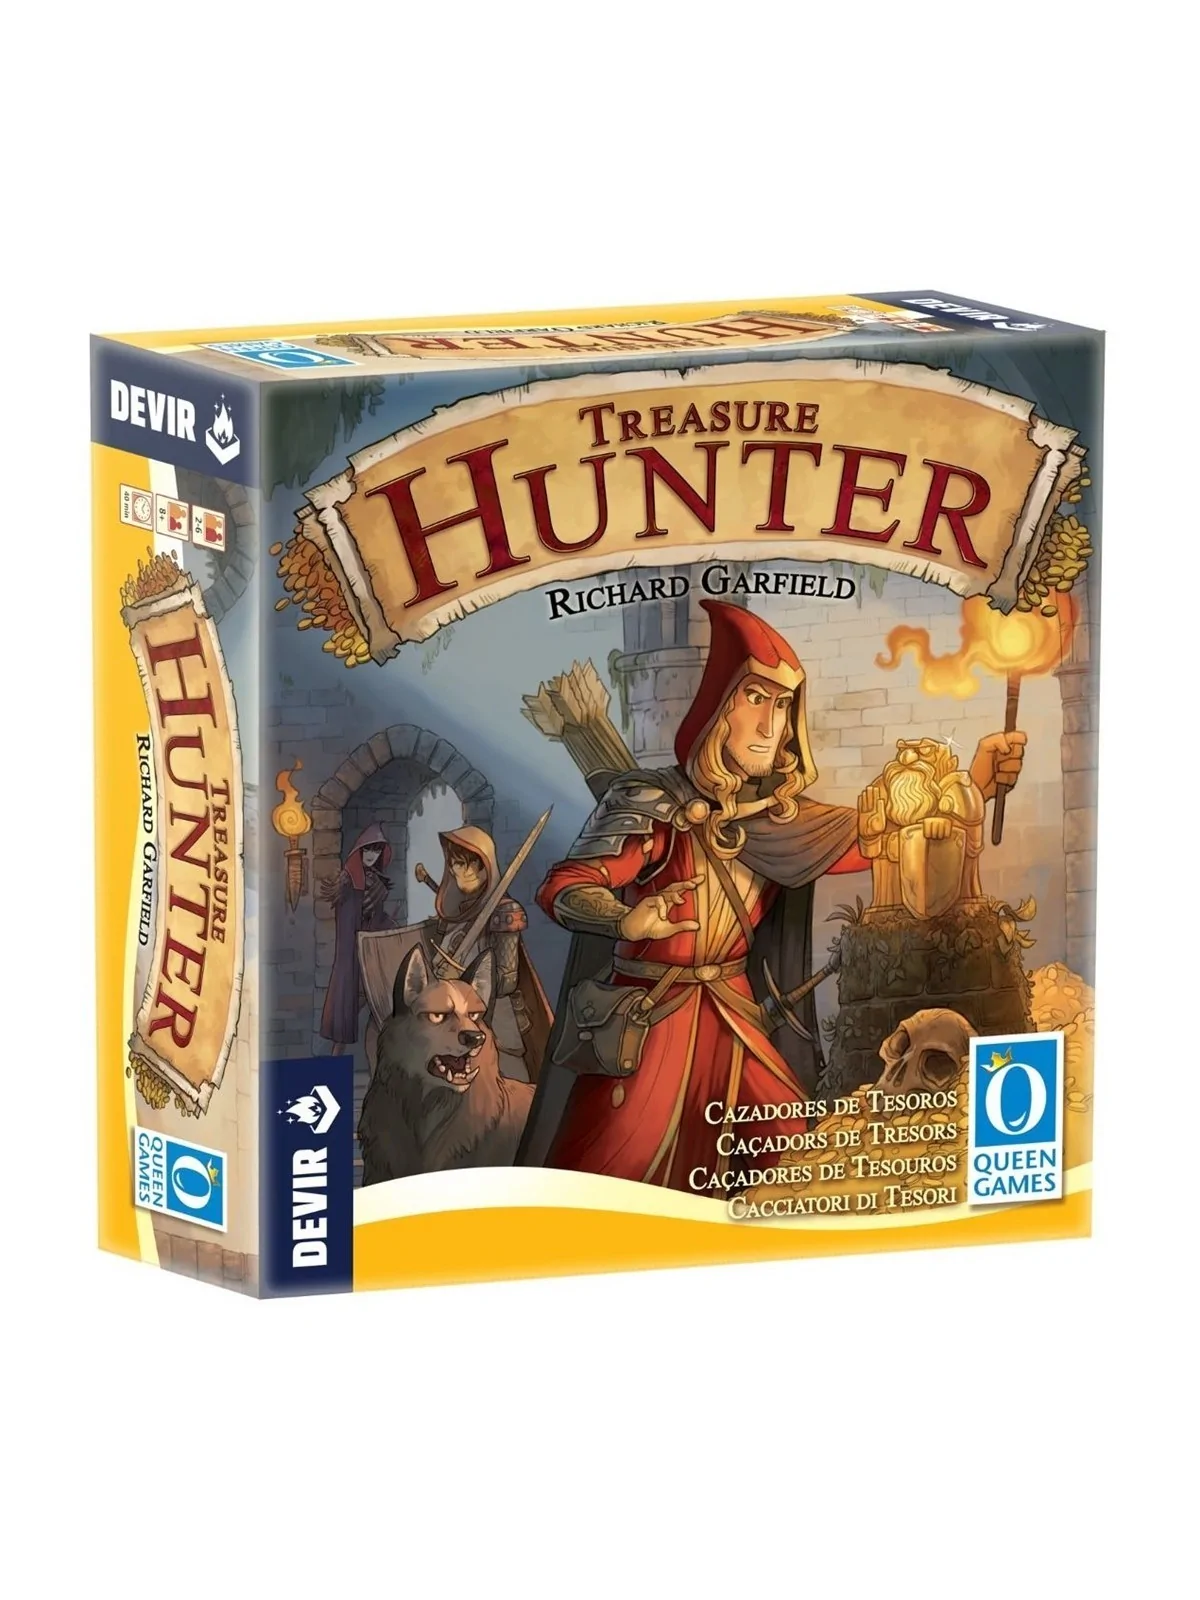 Comprar Treasure Hunters barato al mejor precio 33,60 € de Devir